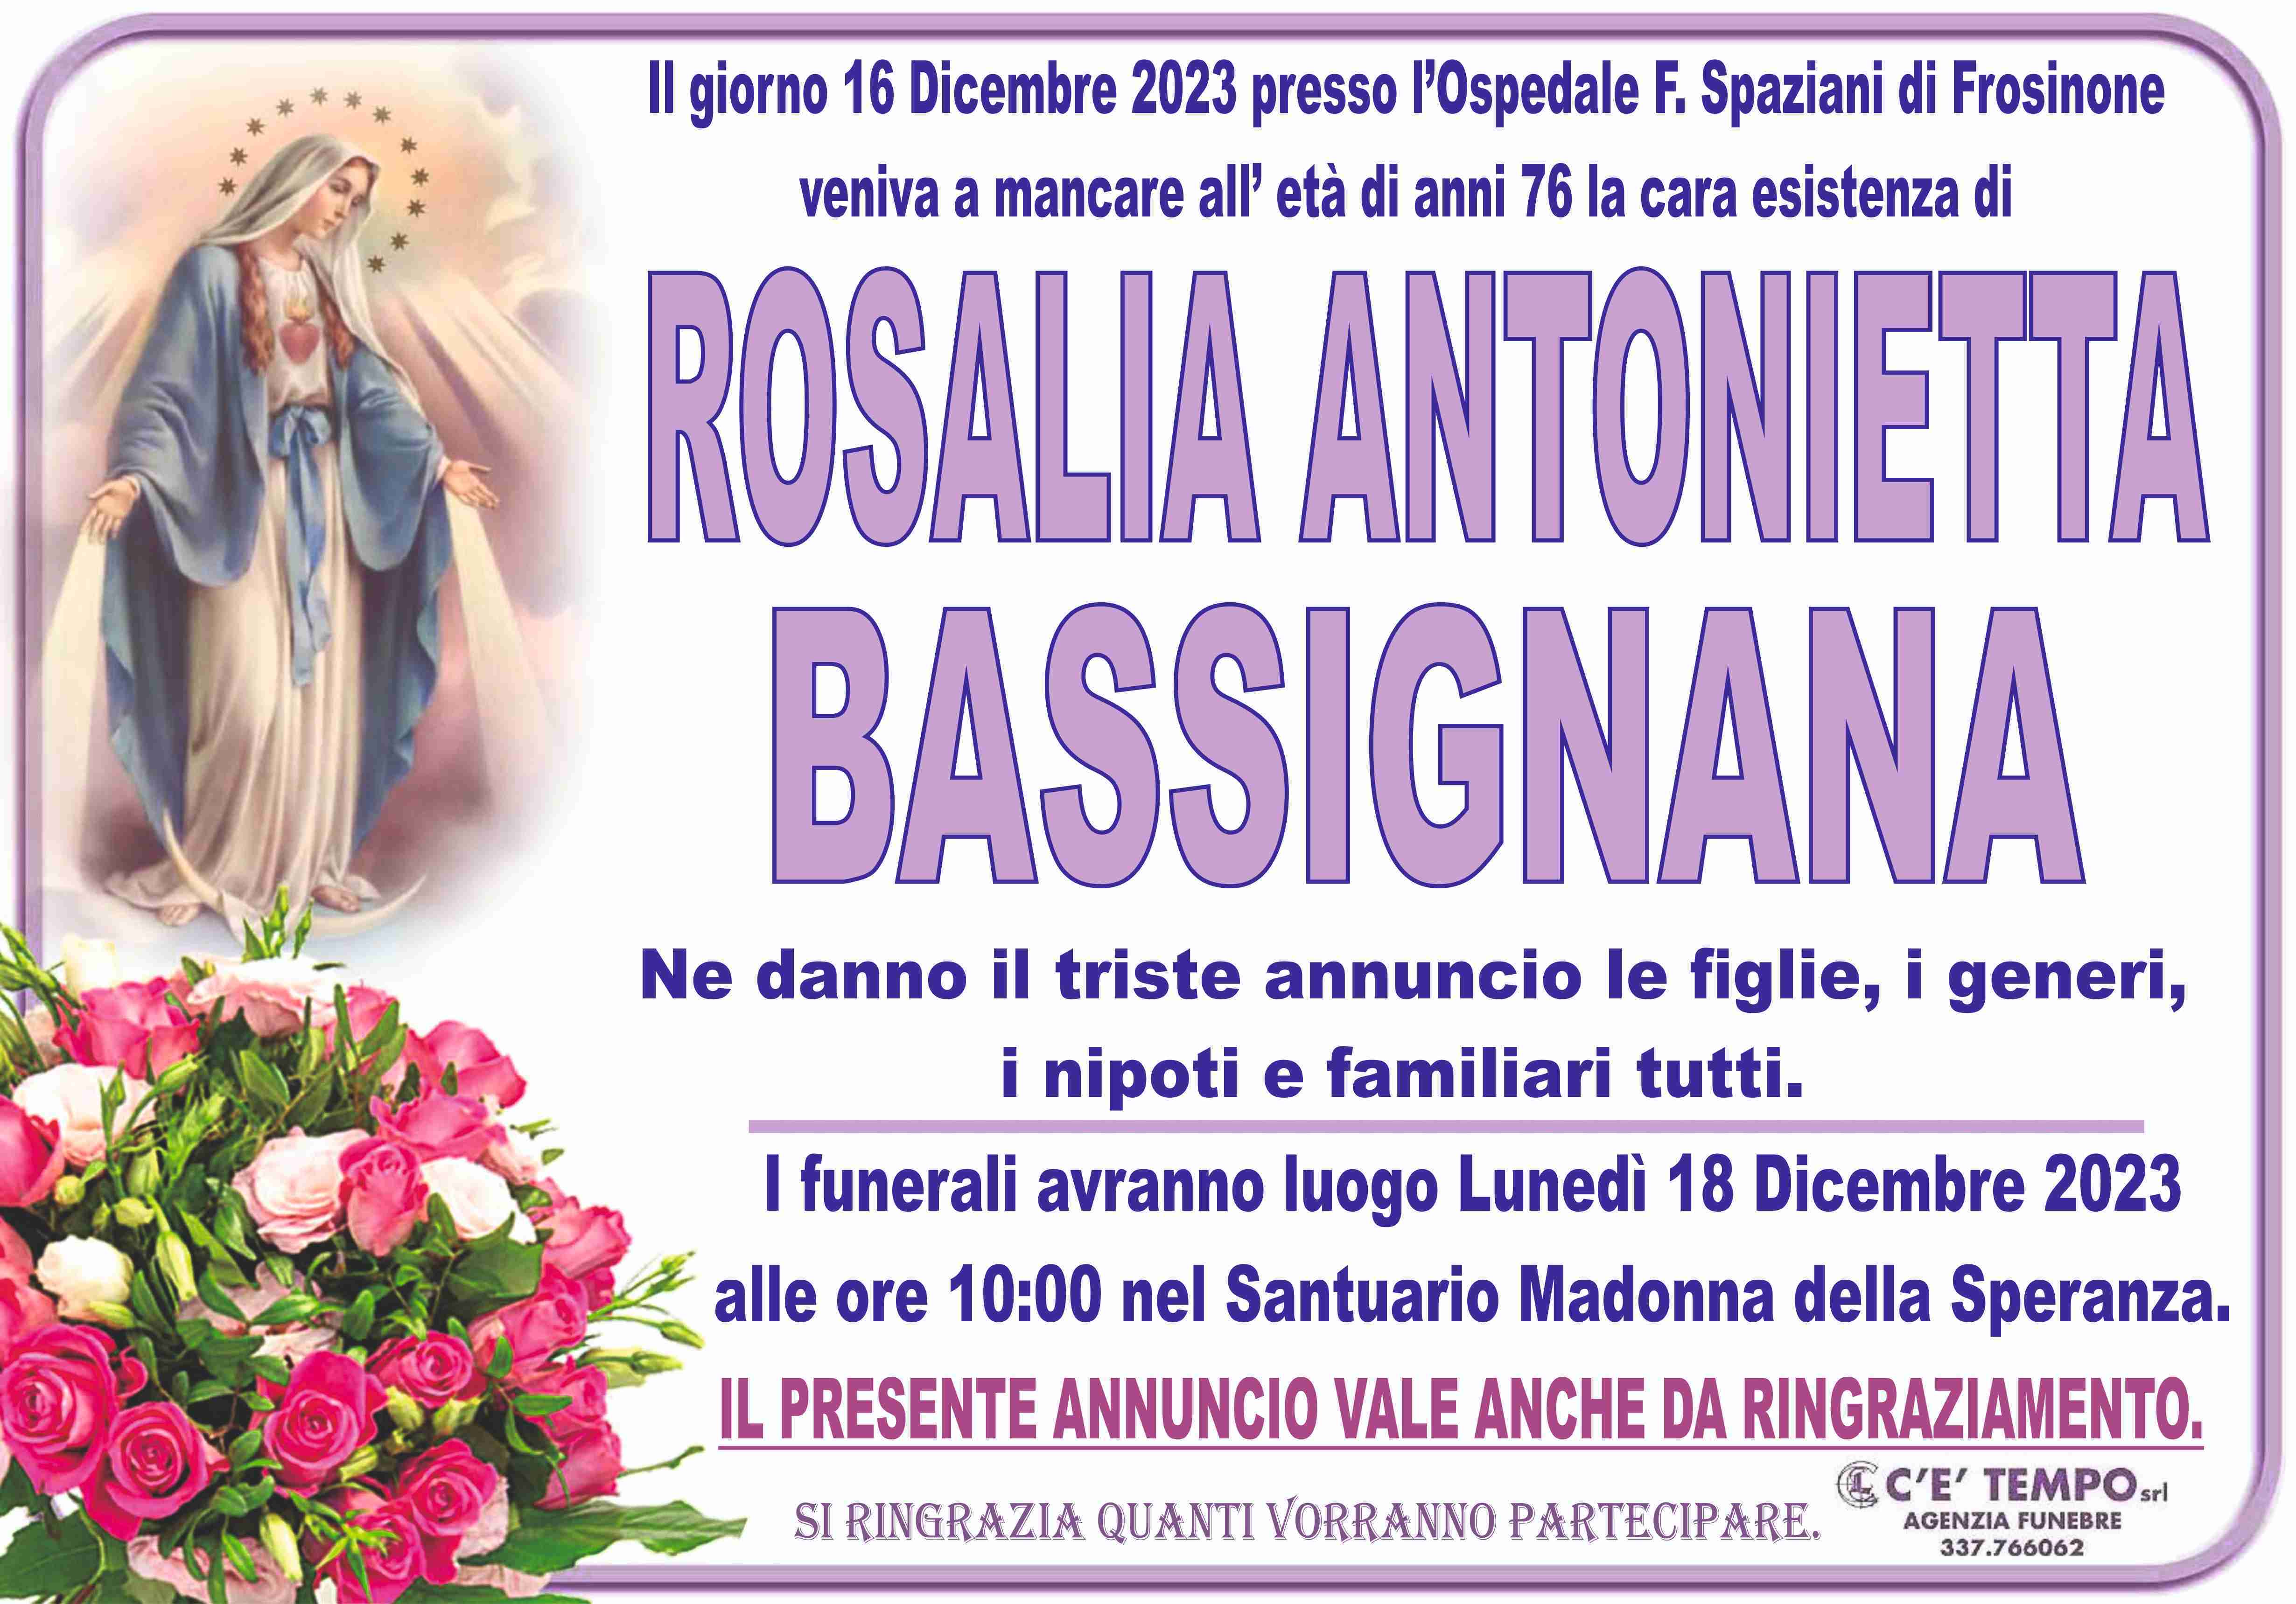 Rosalia Antonietta Bassignana